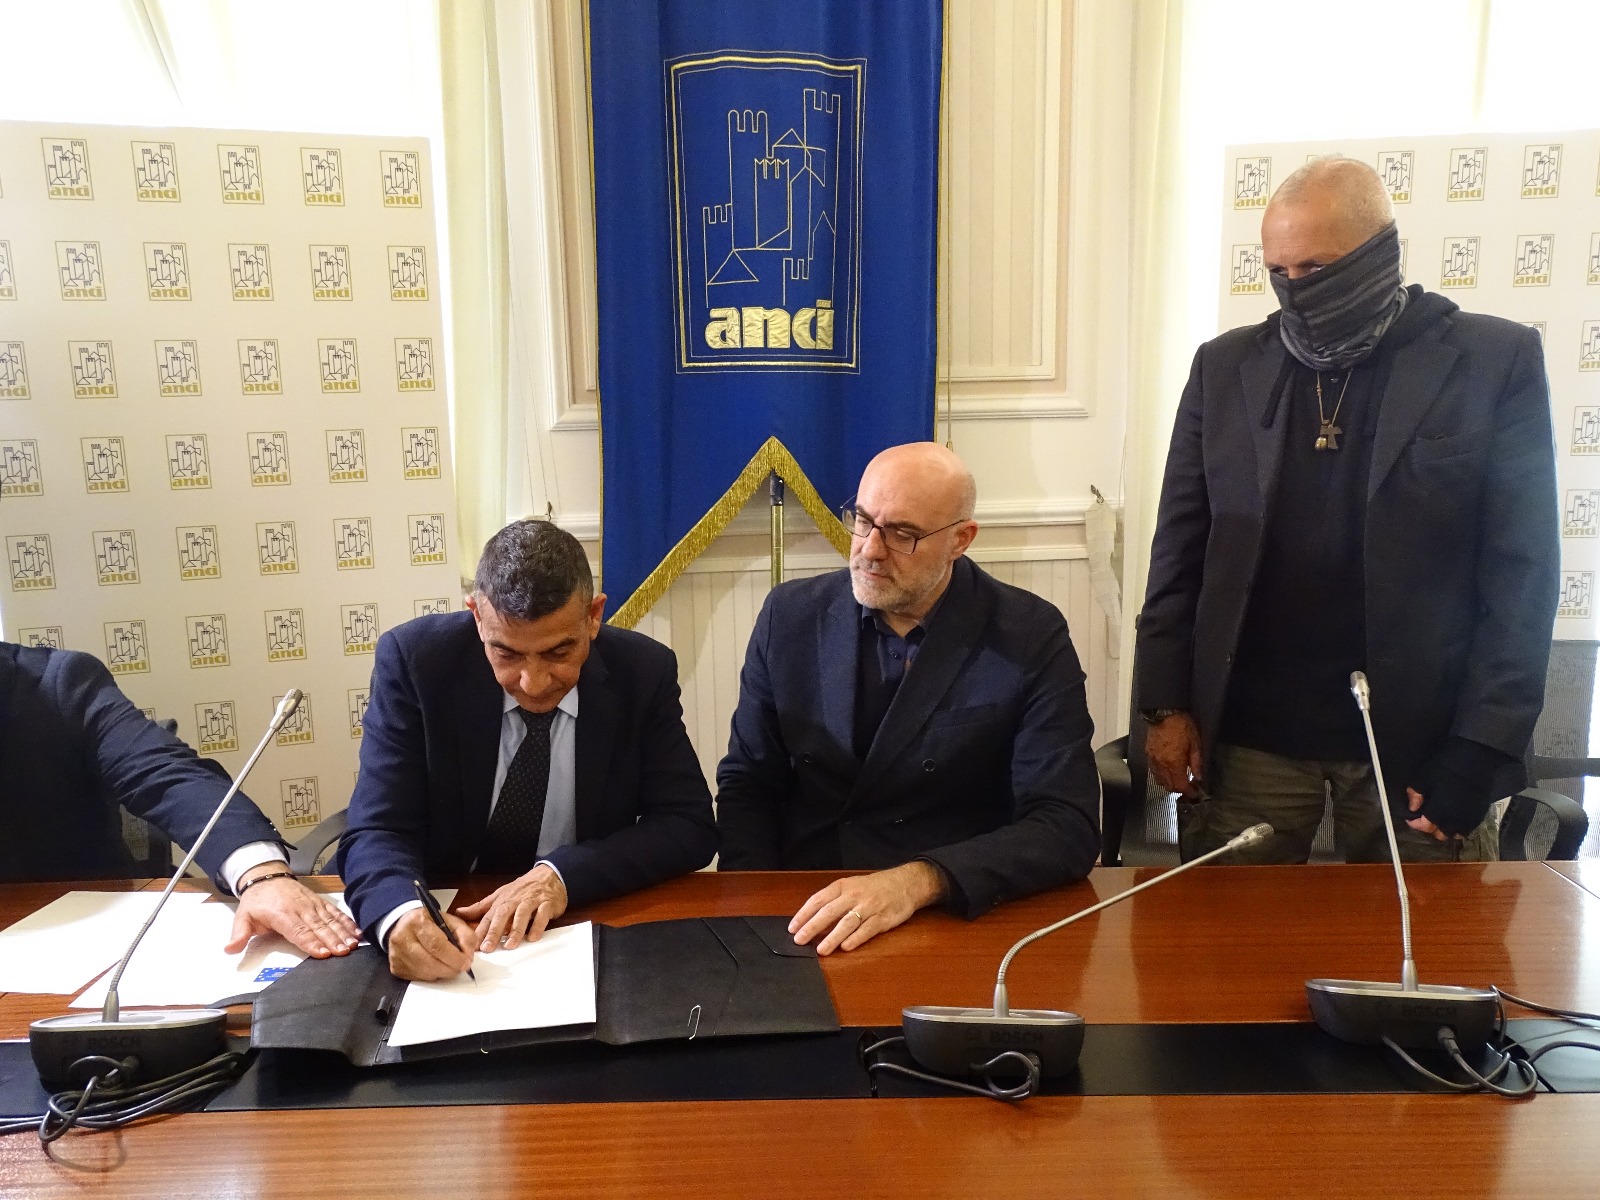 L’Anci e il Sindacato Italiano Militare Carabinieri (SIM) firmano un protocollo d’intesa